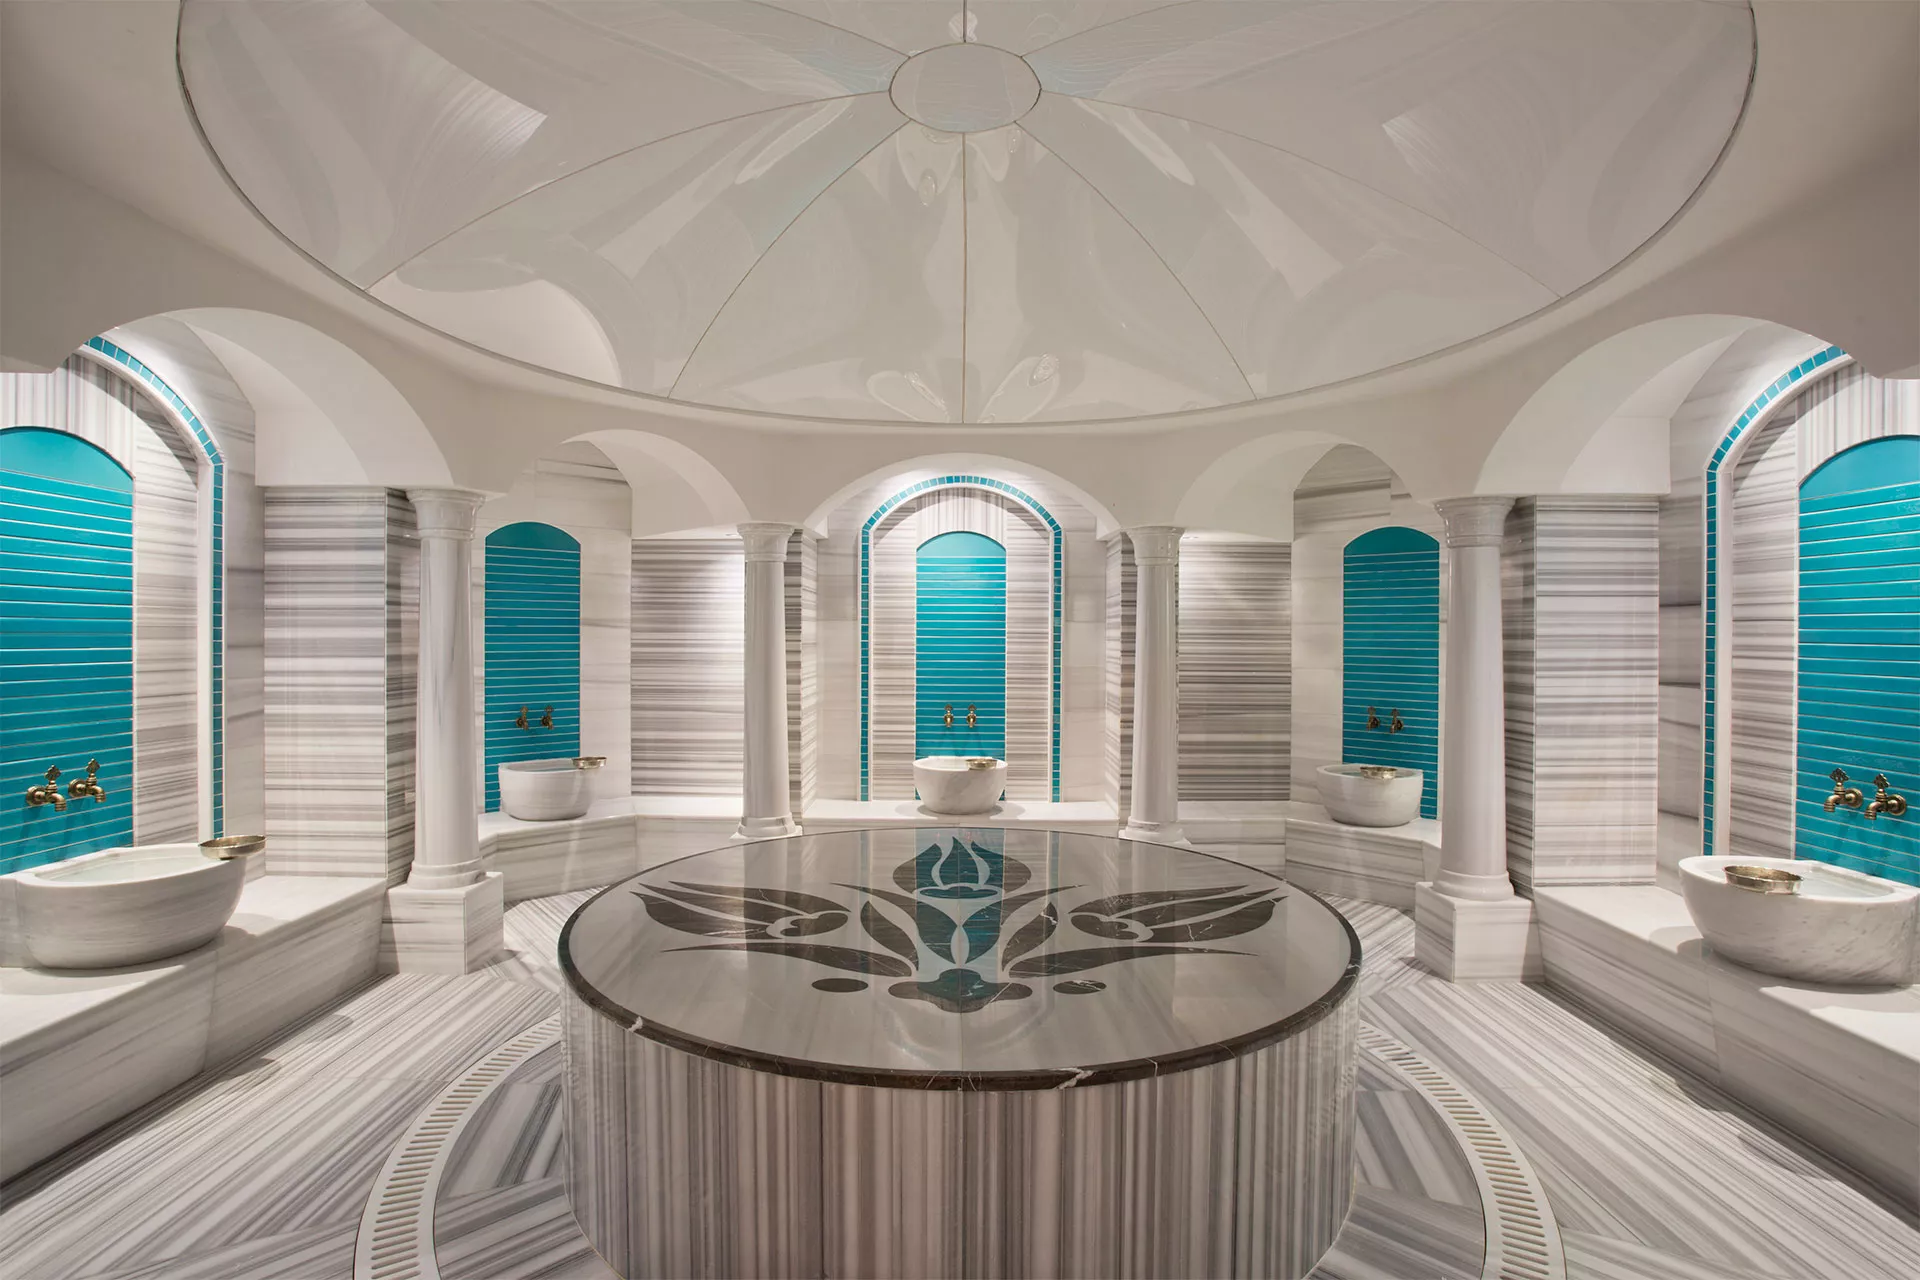 Kleopatra Turkish Bath Spa & Wellness in Turkey, Central Asia | SPAs,Steam Baths & Saunas - Rated 3.9